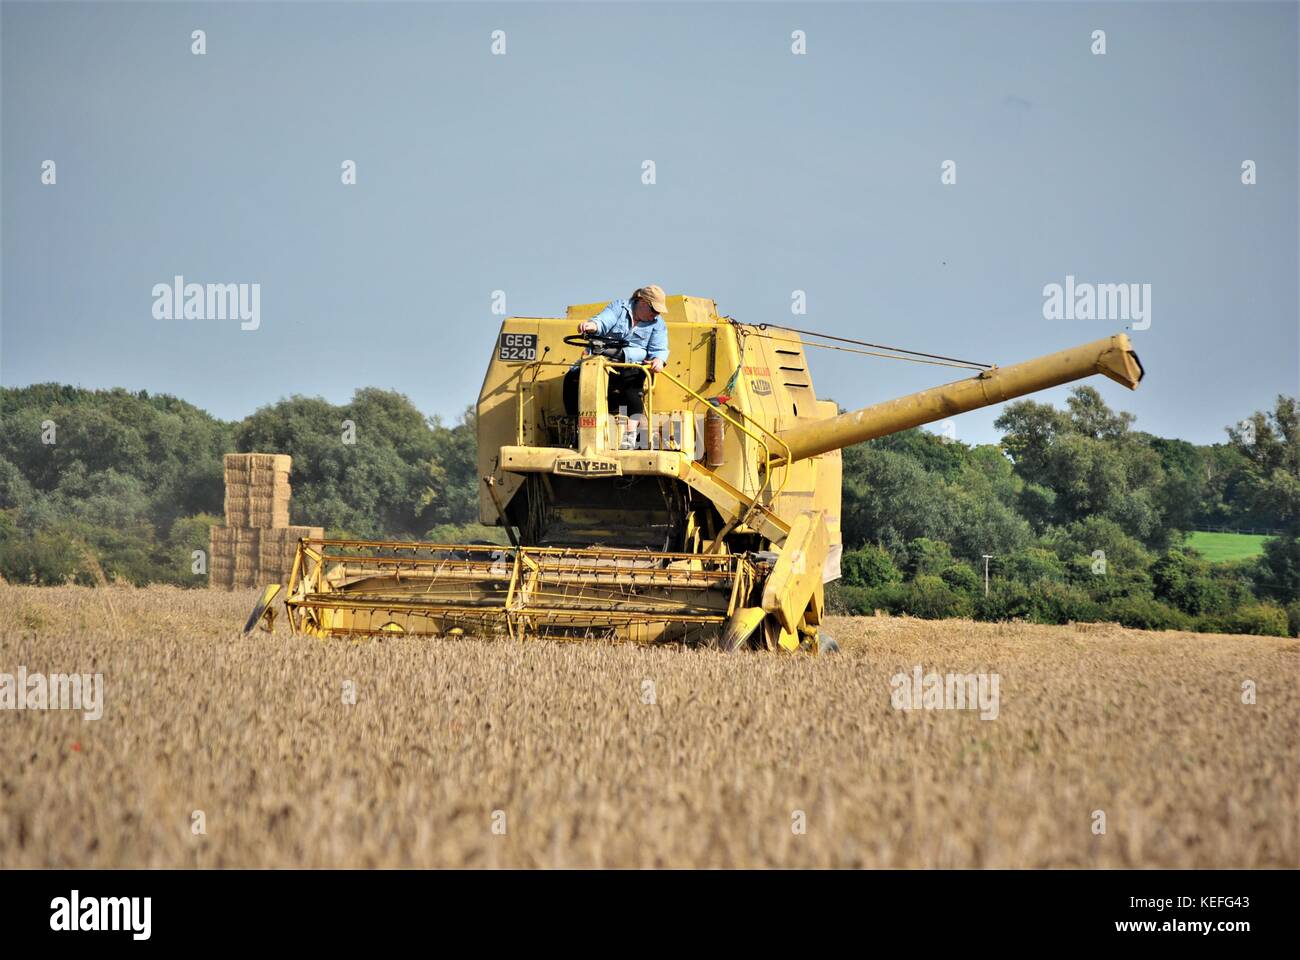 Cabine ouverte ancienne moissonneuse-batteuse new holland jaune de la récolte de cultures d'une exploitation agricole en 2017 Banque D'Images